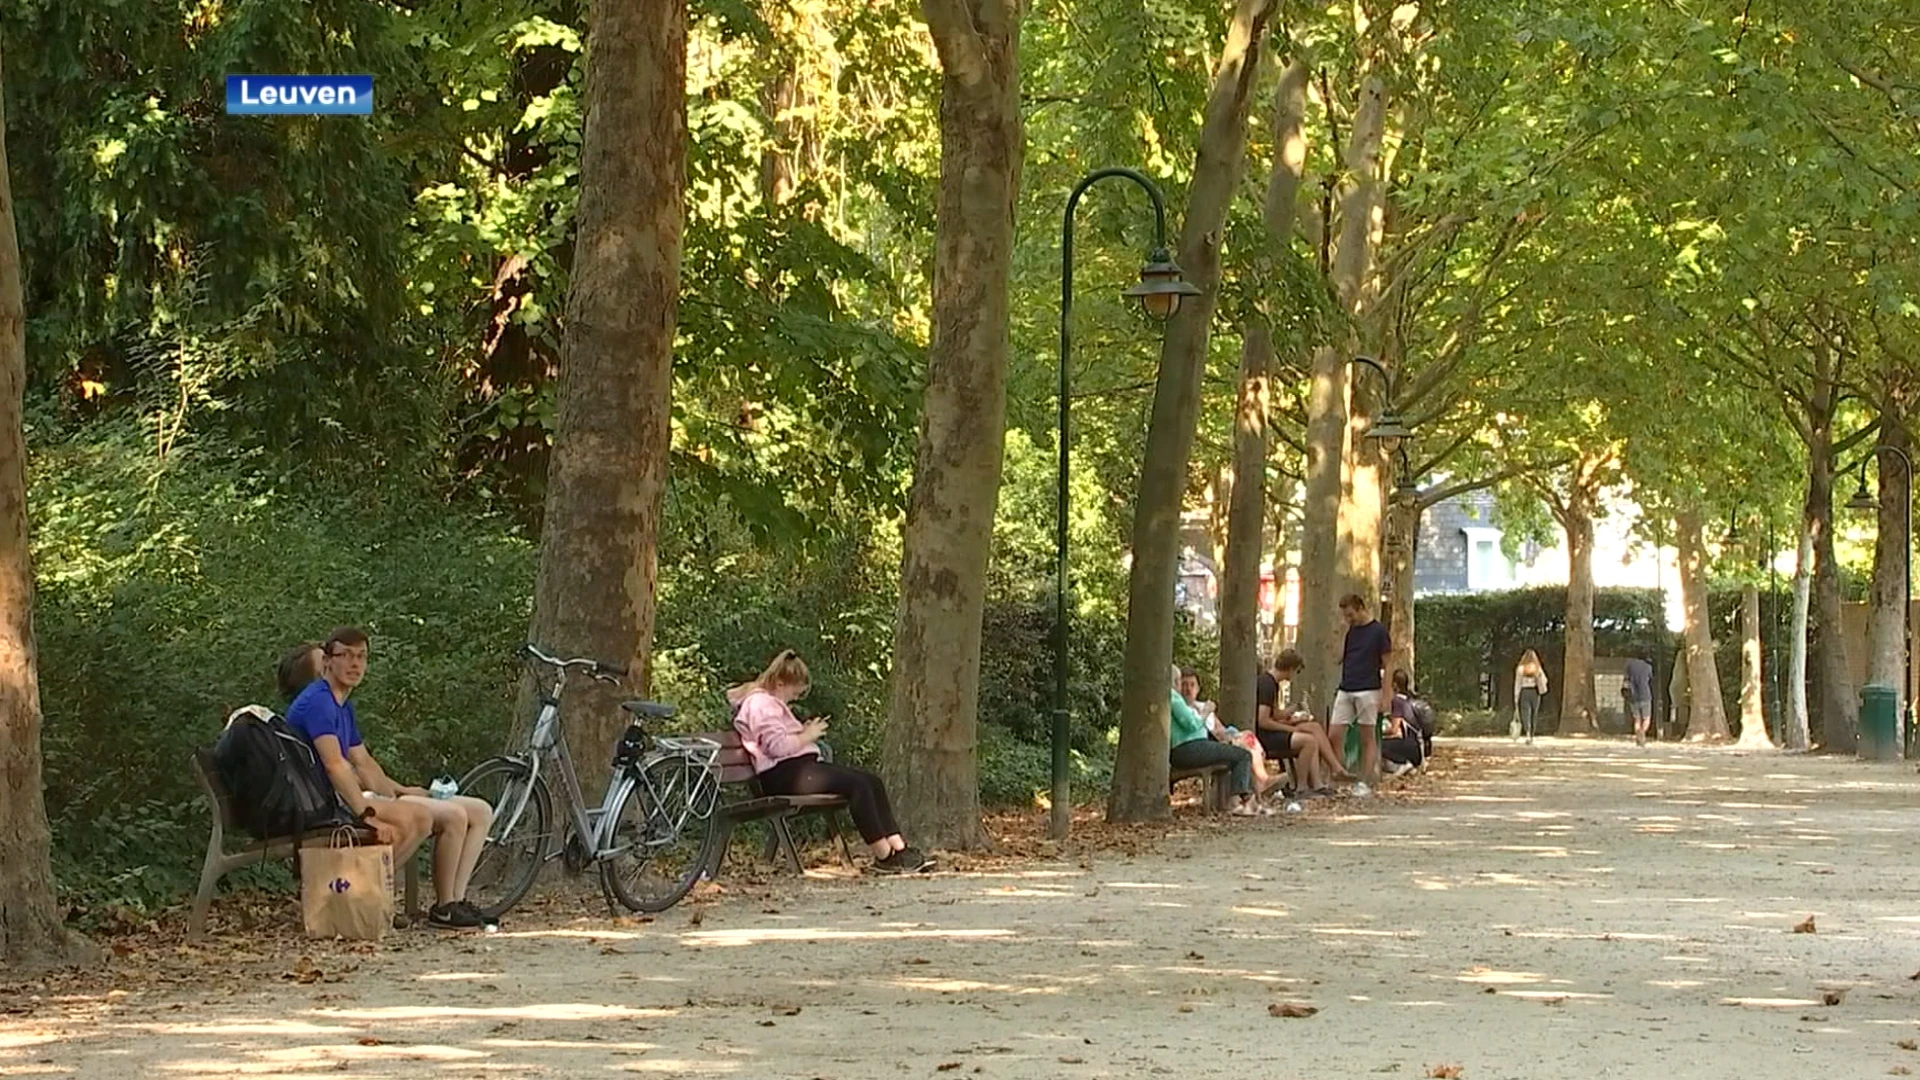 Veertiger uit Herent valt twee mensen aan in Sint-Donatuspark in Leuven